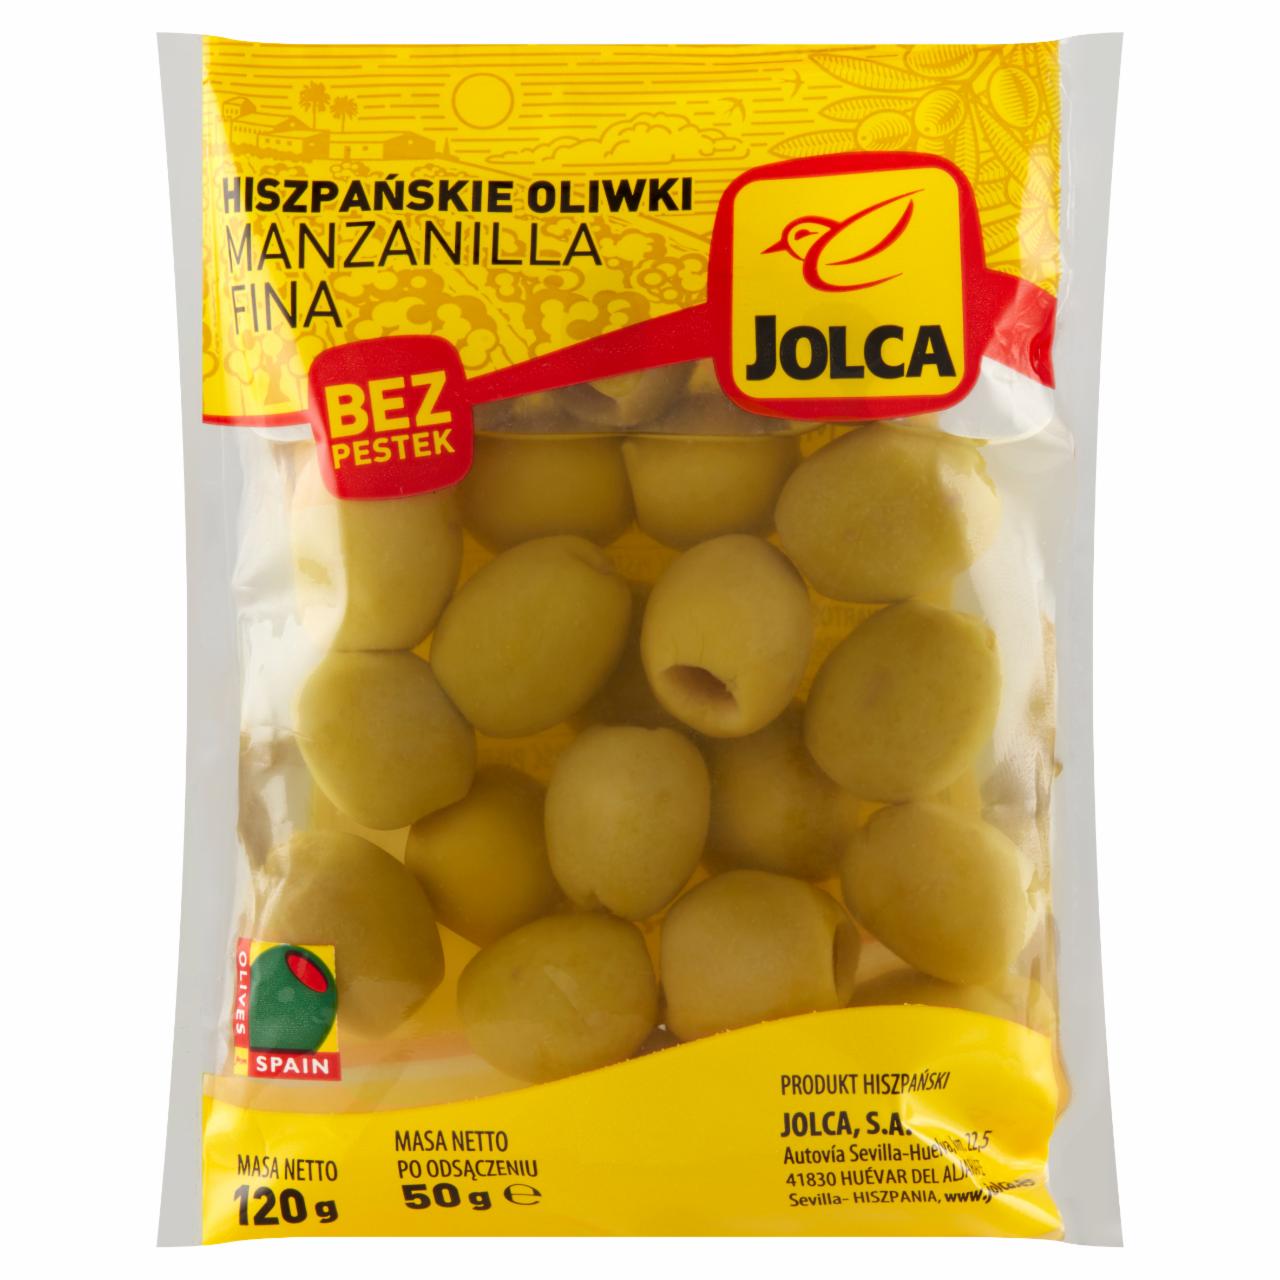 Zdjęcia - Jolca Hiszpańskie oliwki manzanilla fina bez pestek 120 g